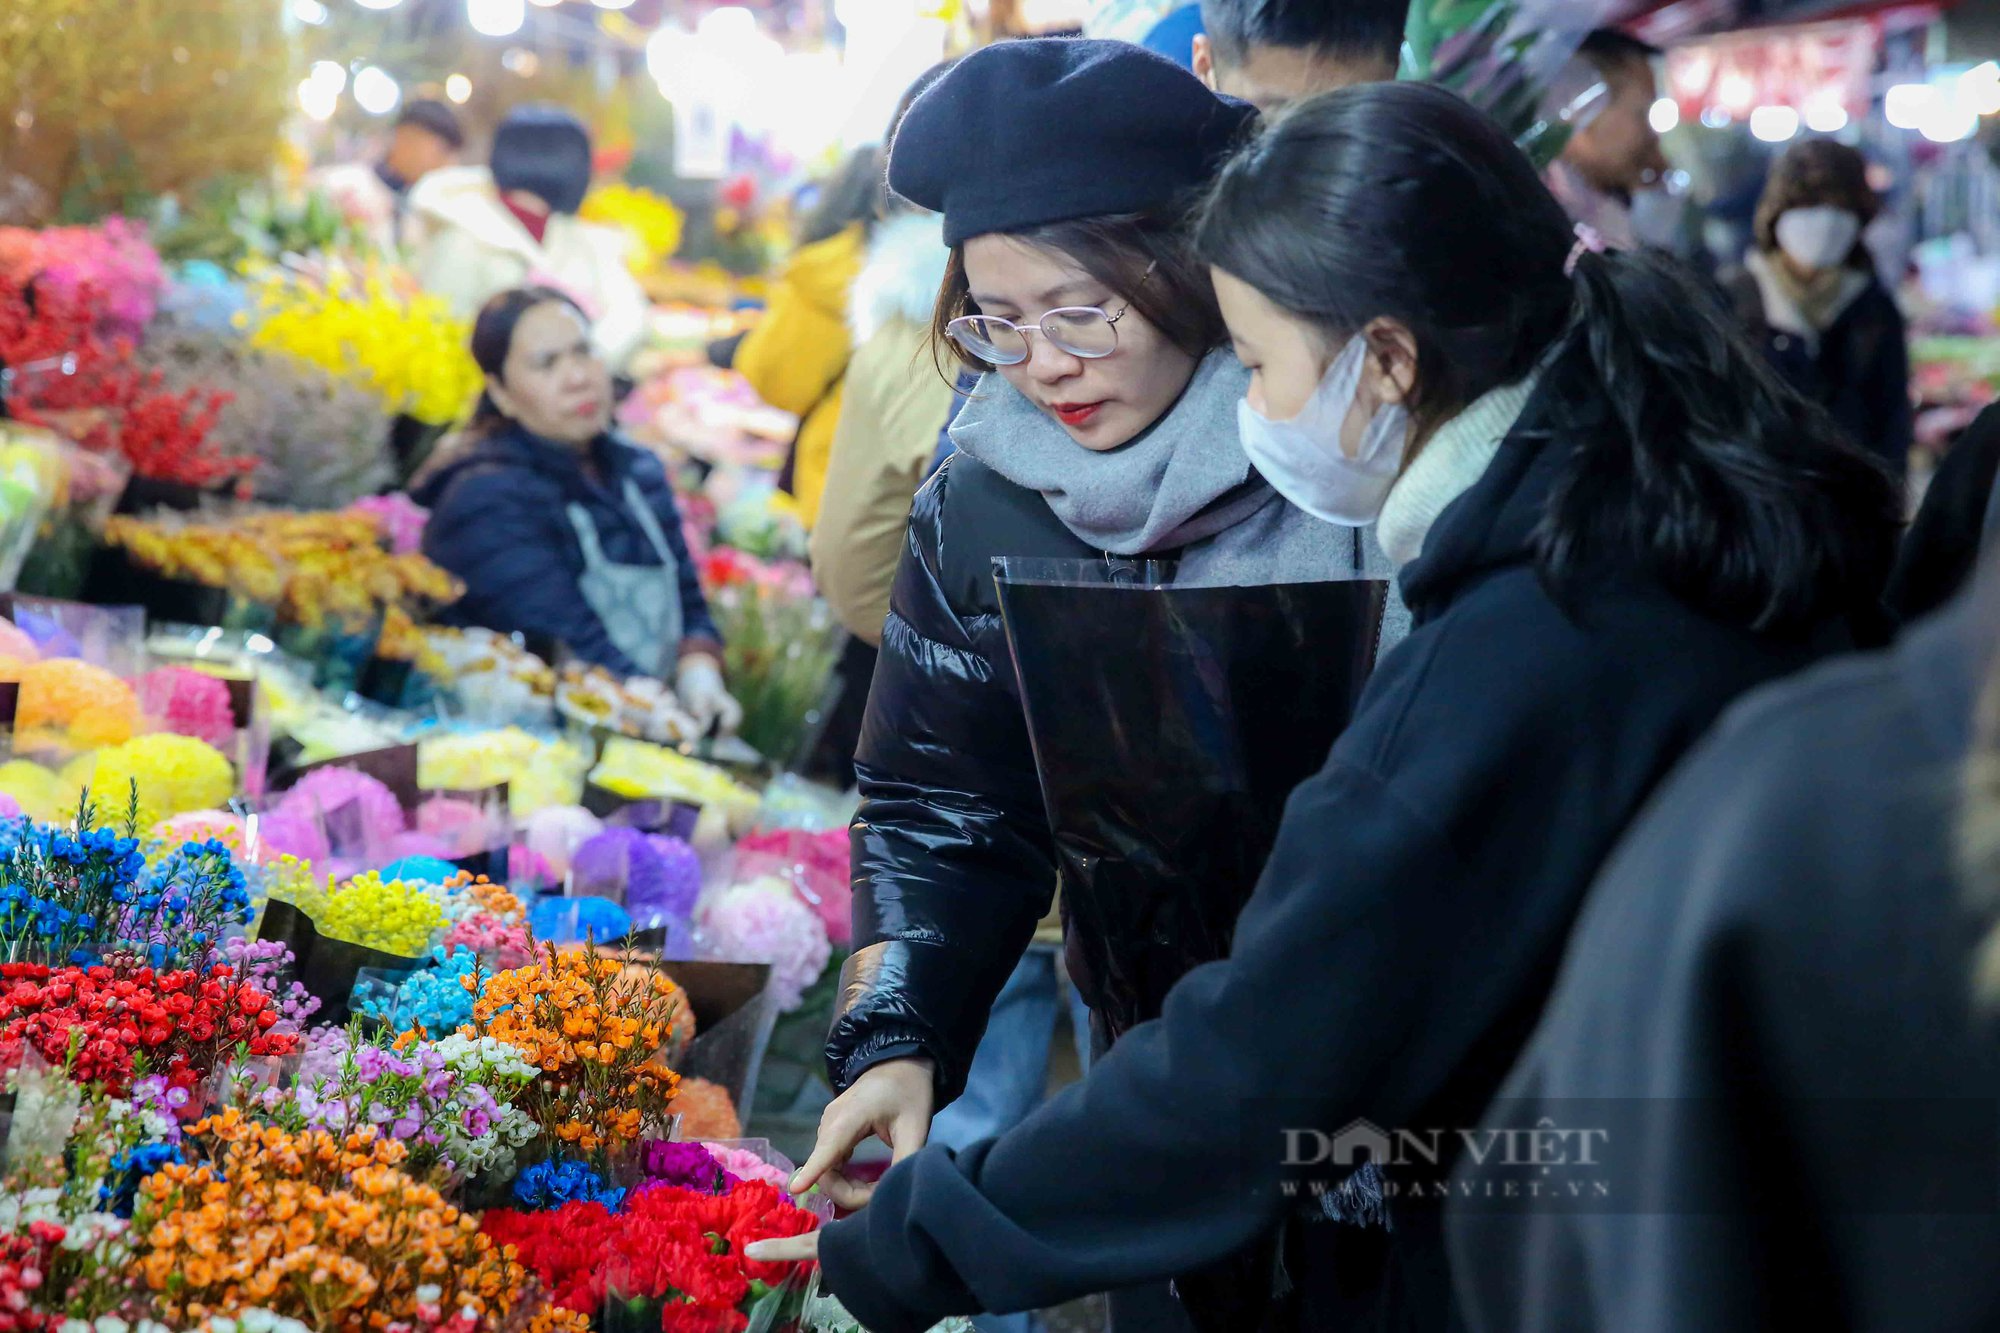 Giáp tết chợ hoa Quảng Bá vẫn đông nghịt người dân lúc nửa đêm - Ảnh 3.